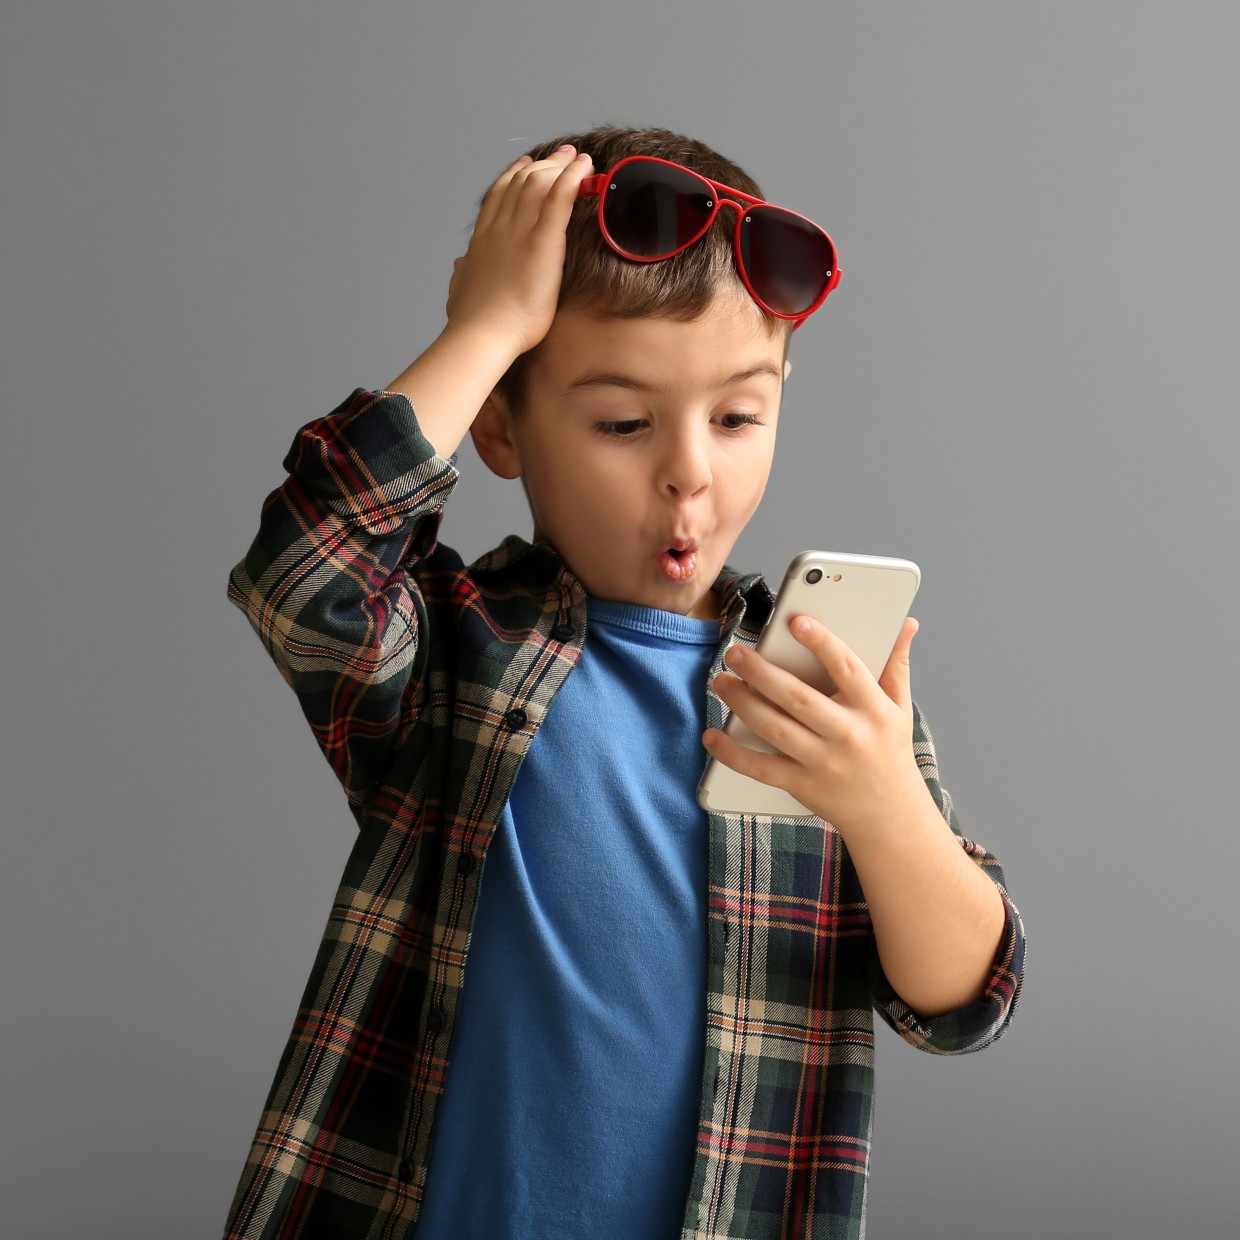  子どもにスマホを貸すときのイタズラ防止に！タッチ有効範囲を限定する方法 #iPhone 